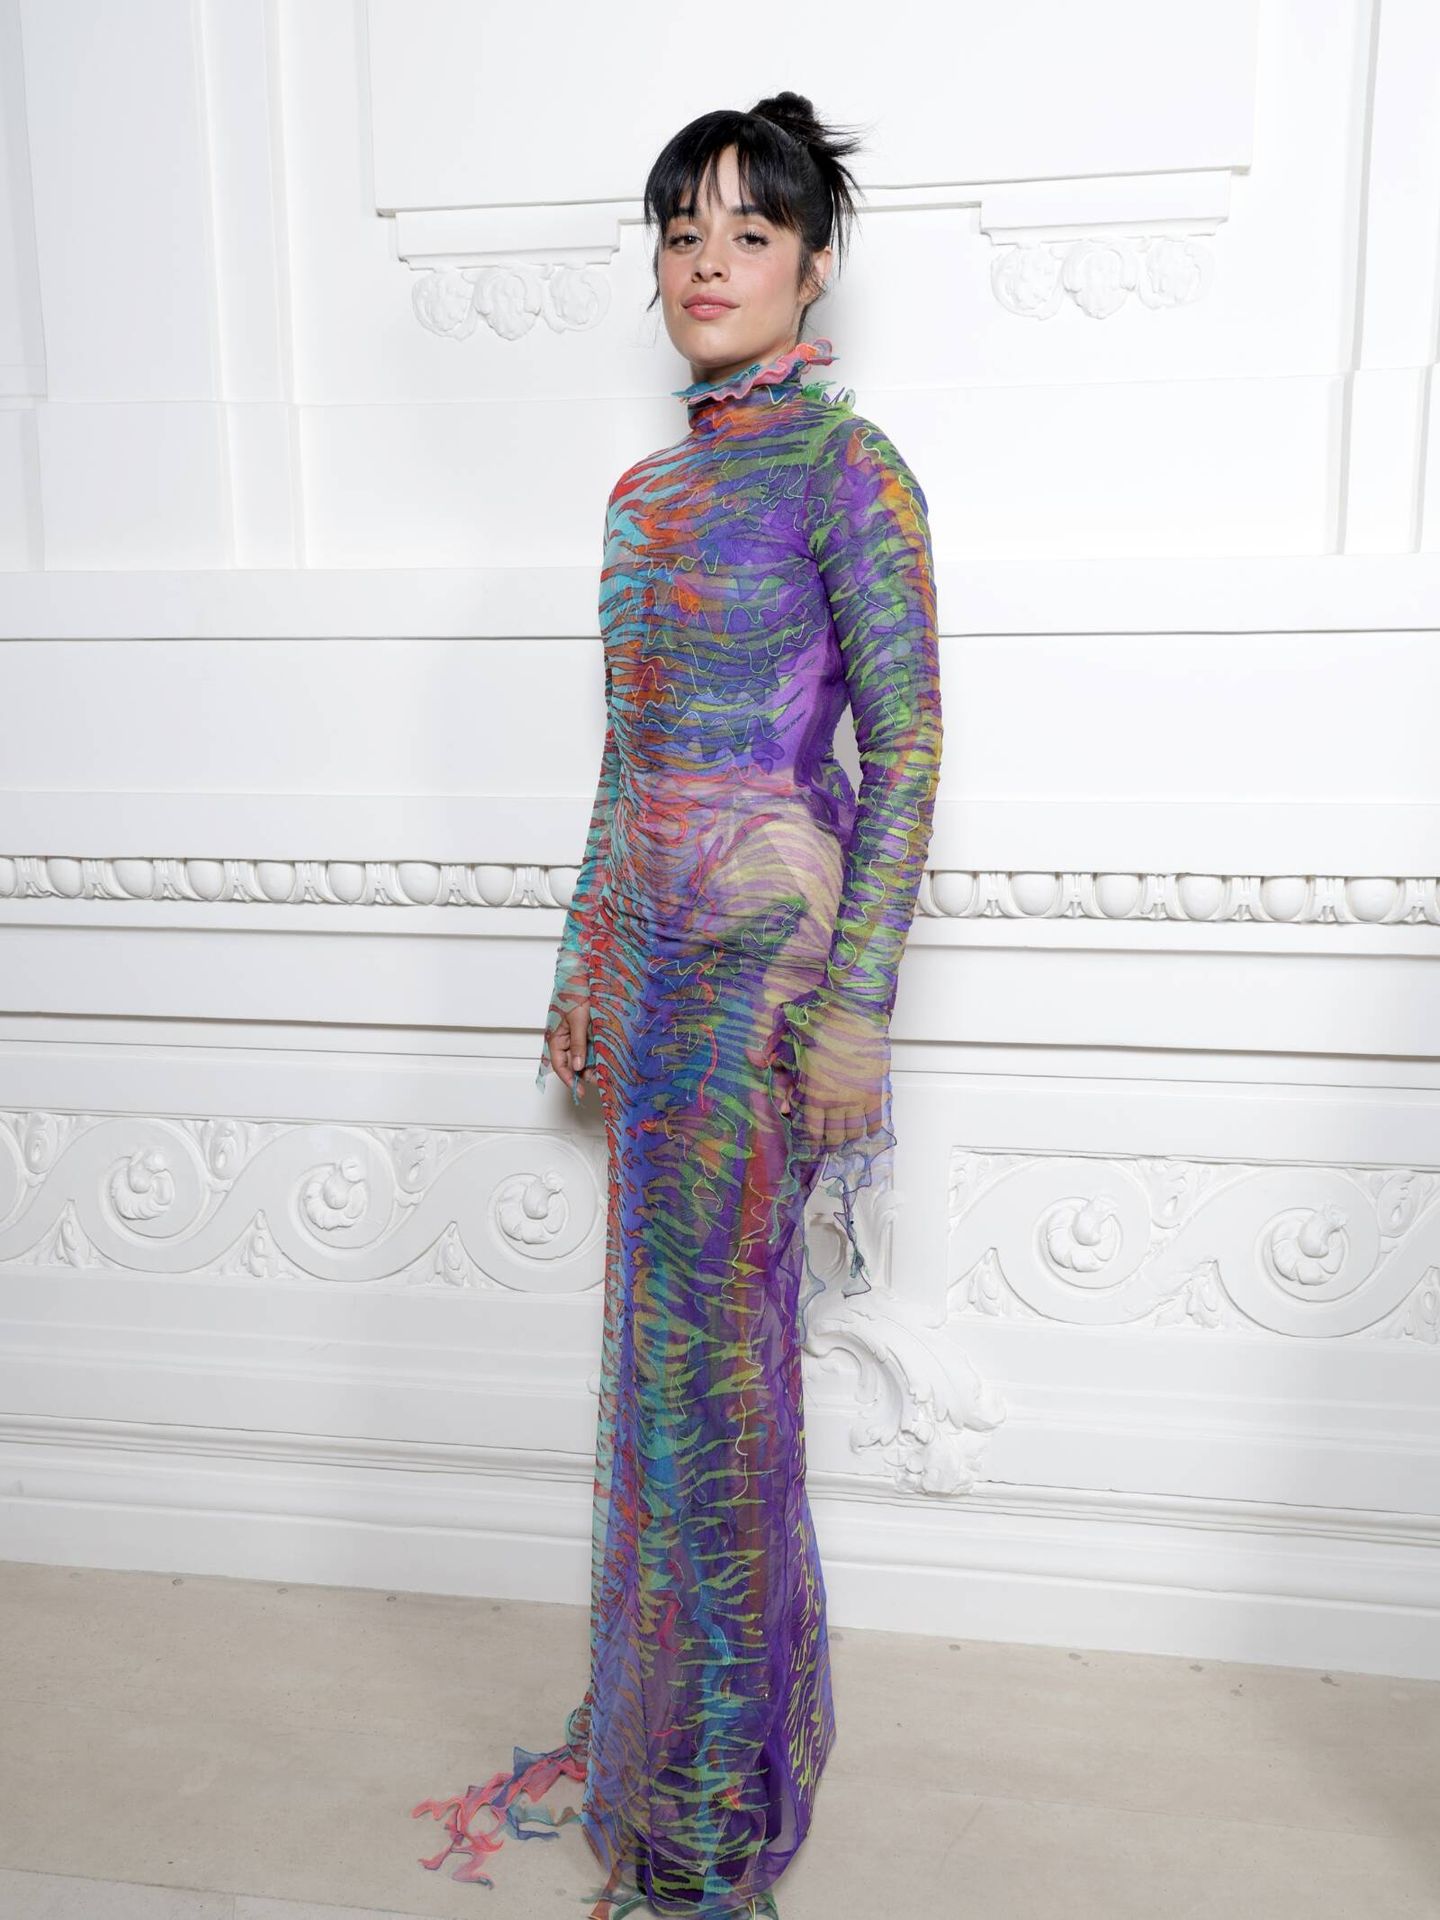 La cantante y actriz Camila Cabello. (Getty Images)